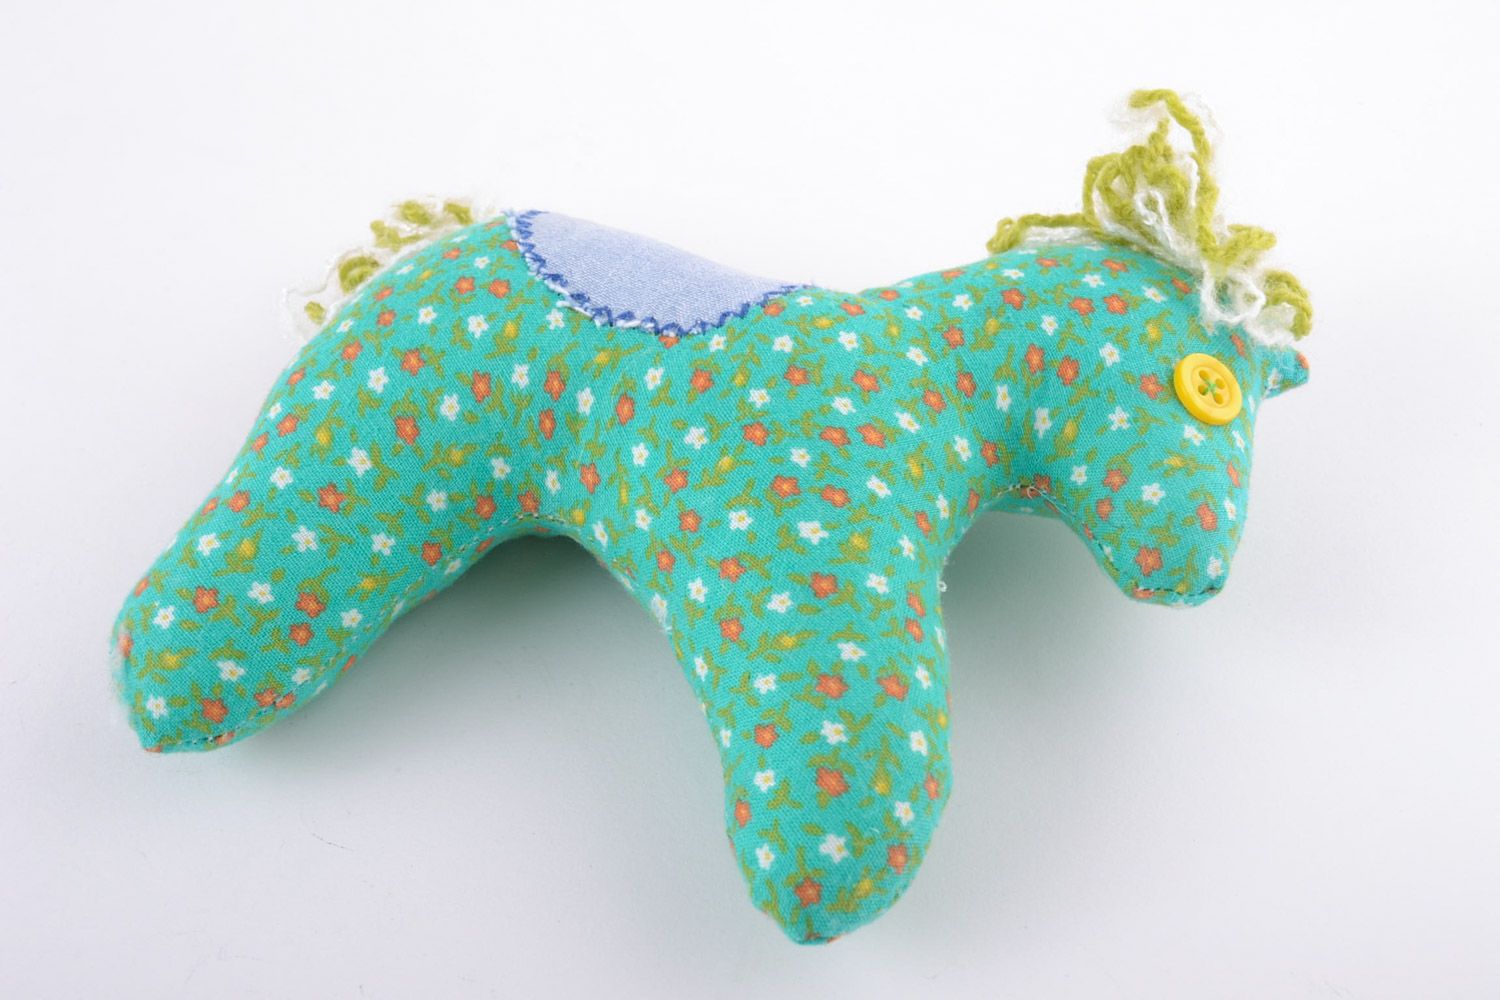 Textil Kuscheltier Pferd mit Polyester Füllung für Kinder sicher einfach klein foto 4